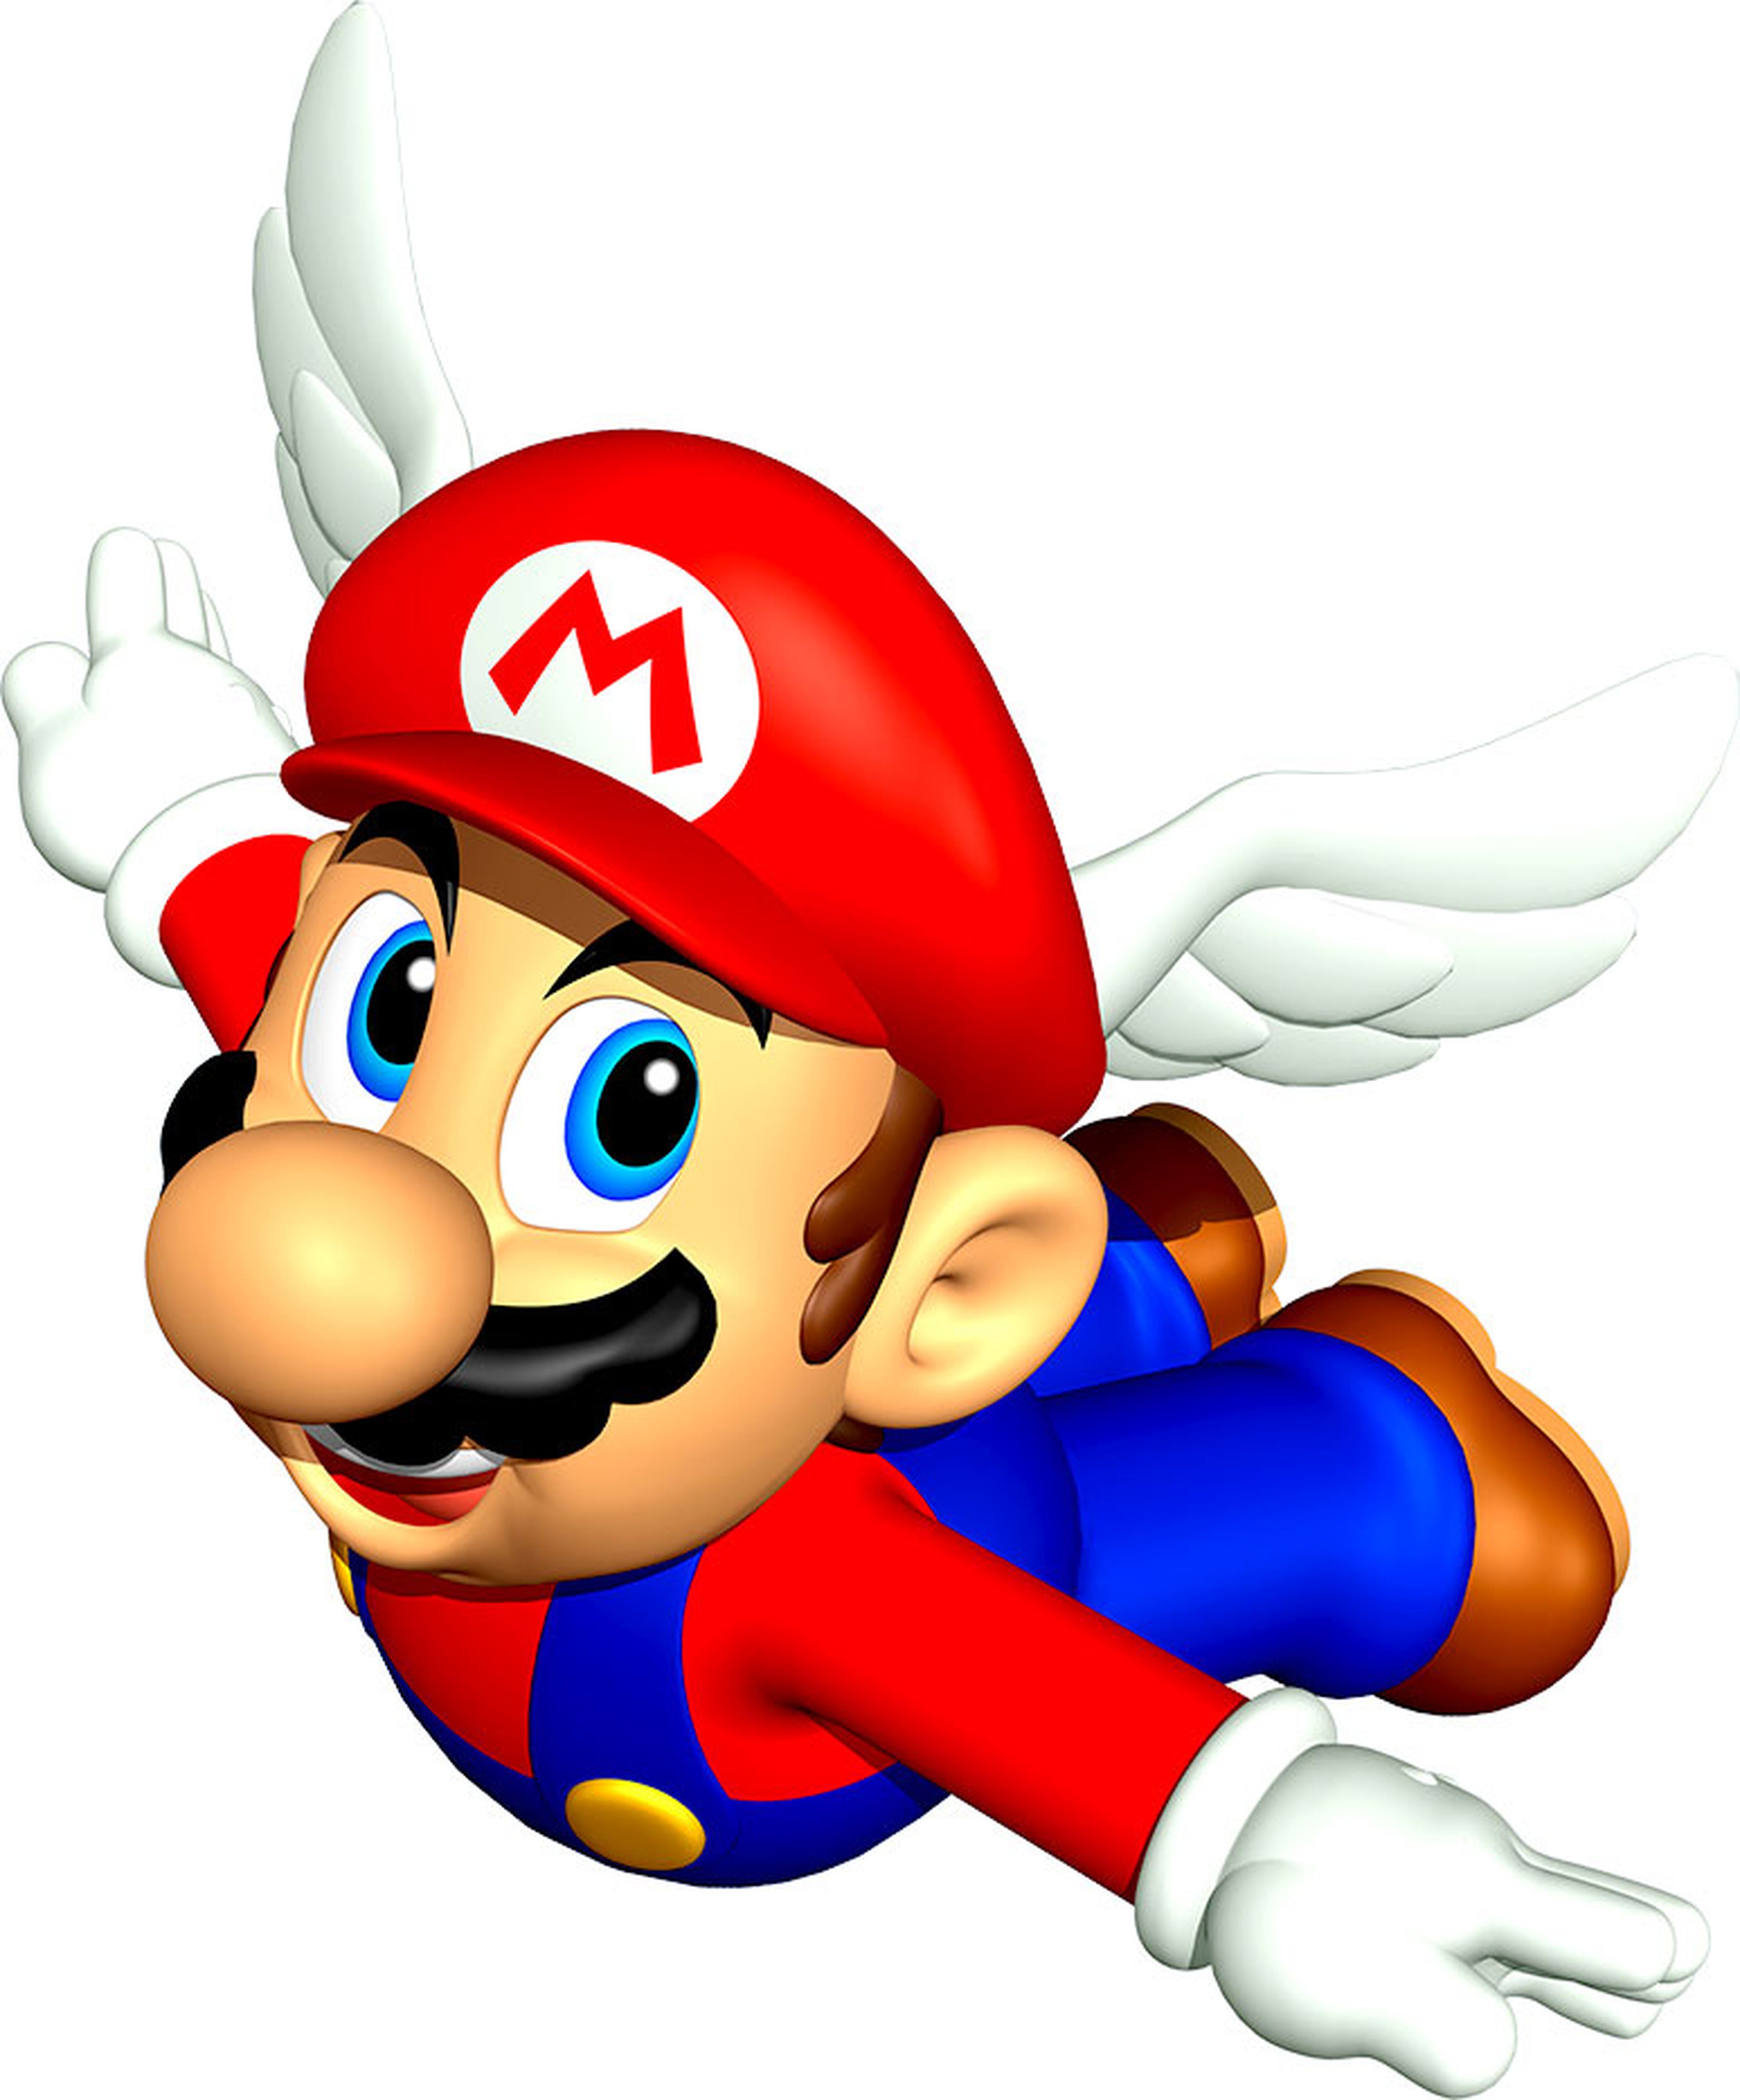 Super Mario 64 (Imagen Mario)